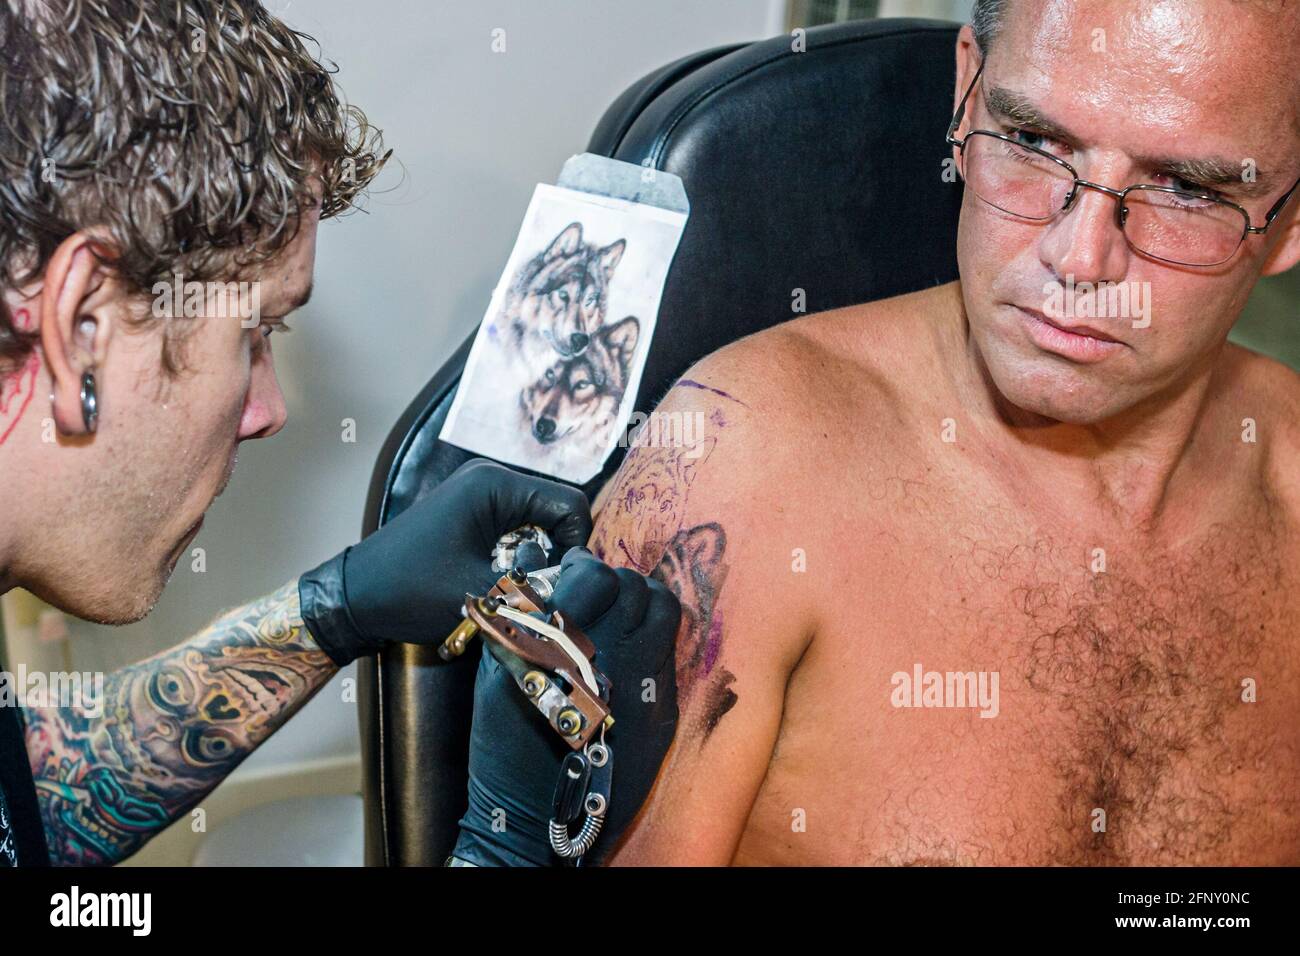 Nick Minervine  Tattoo Artist  Fort Walton Beach  TrueArtists